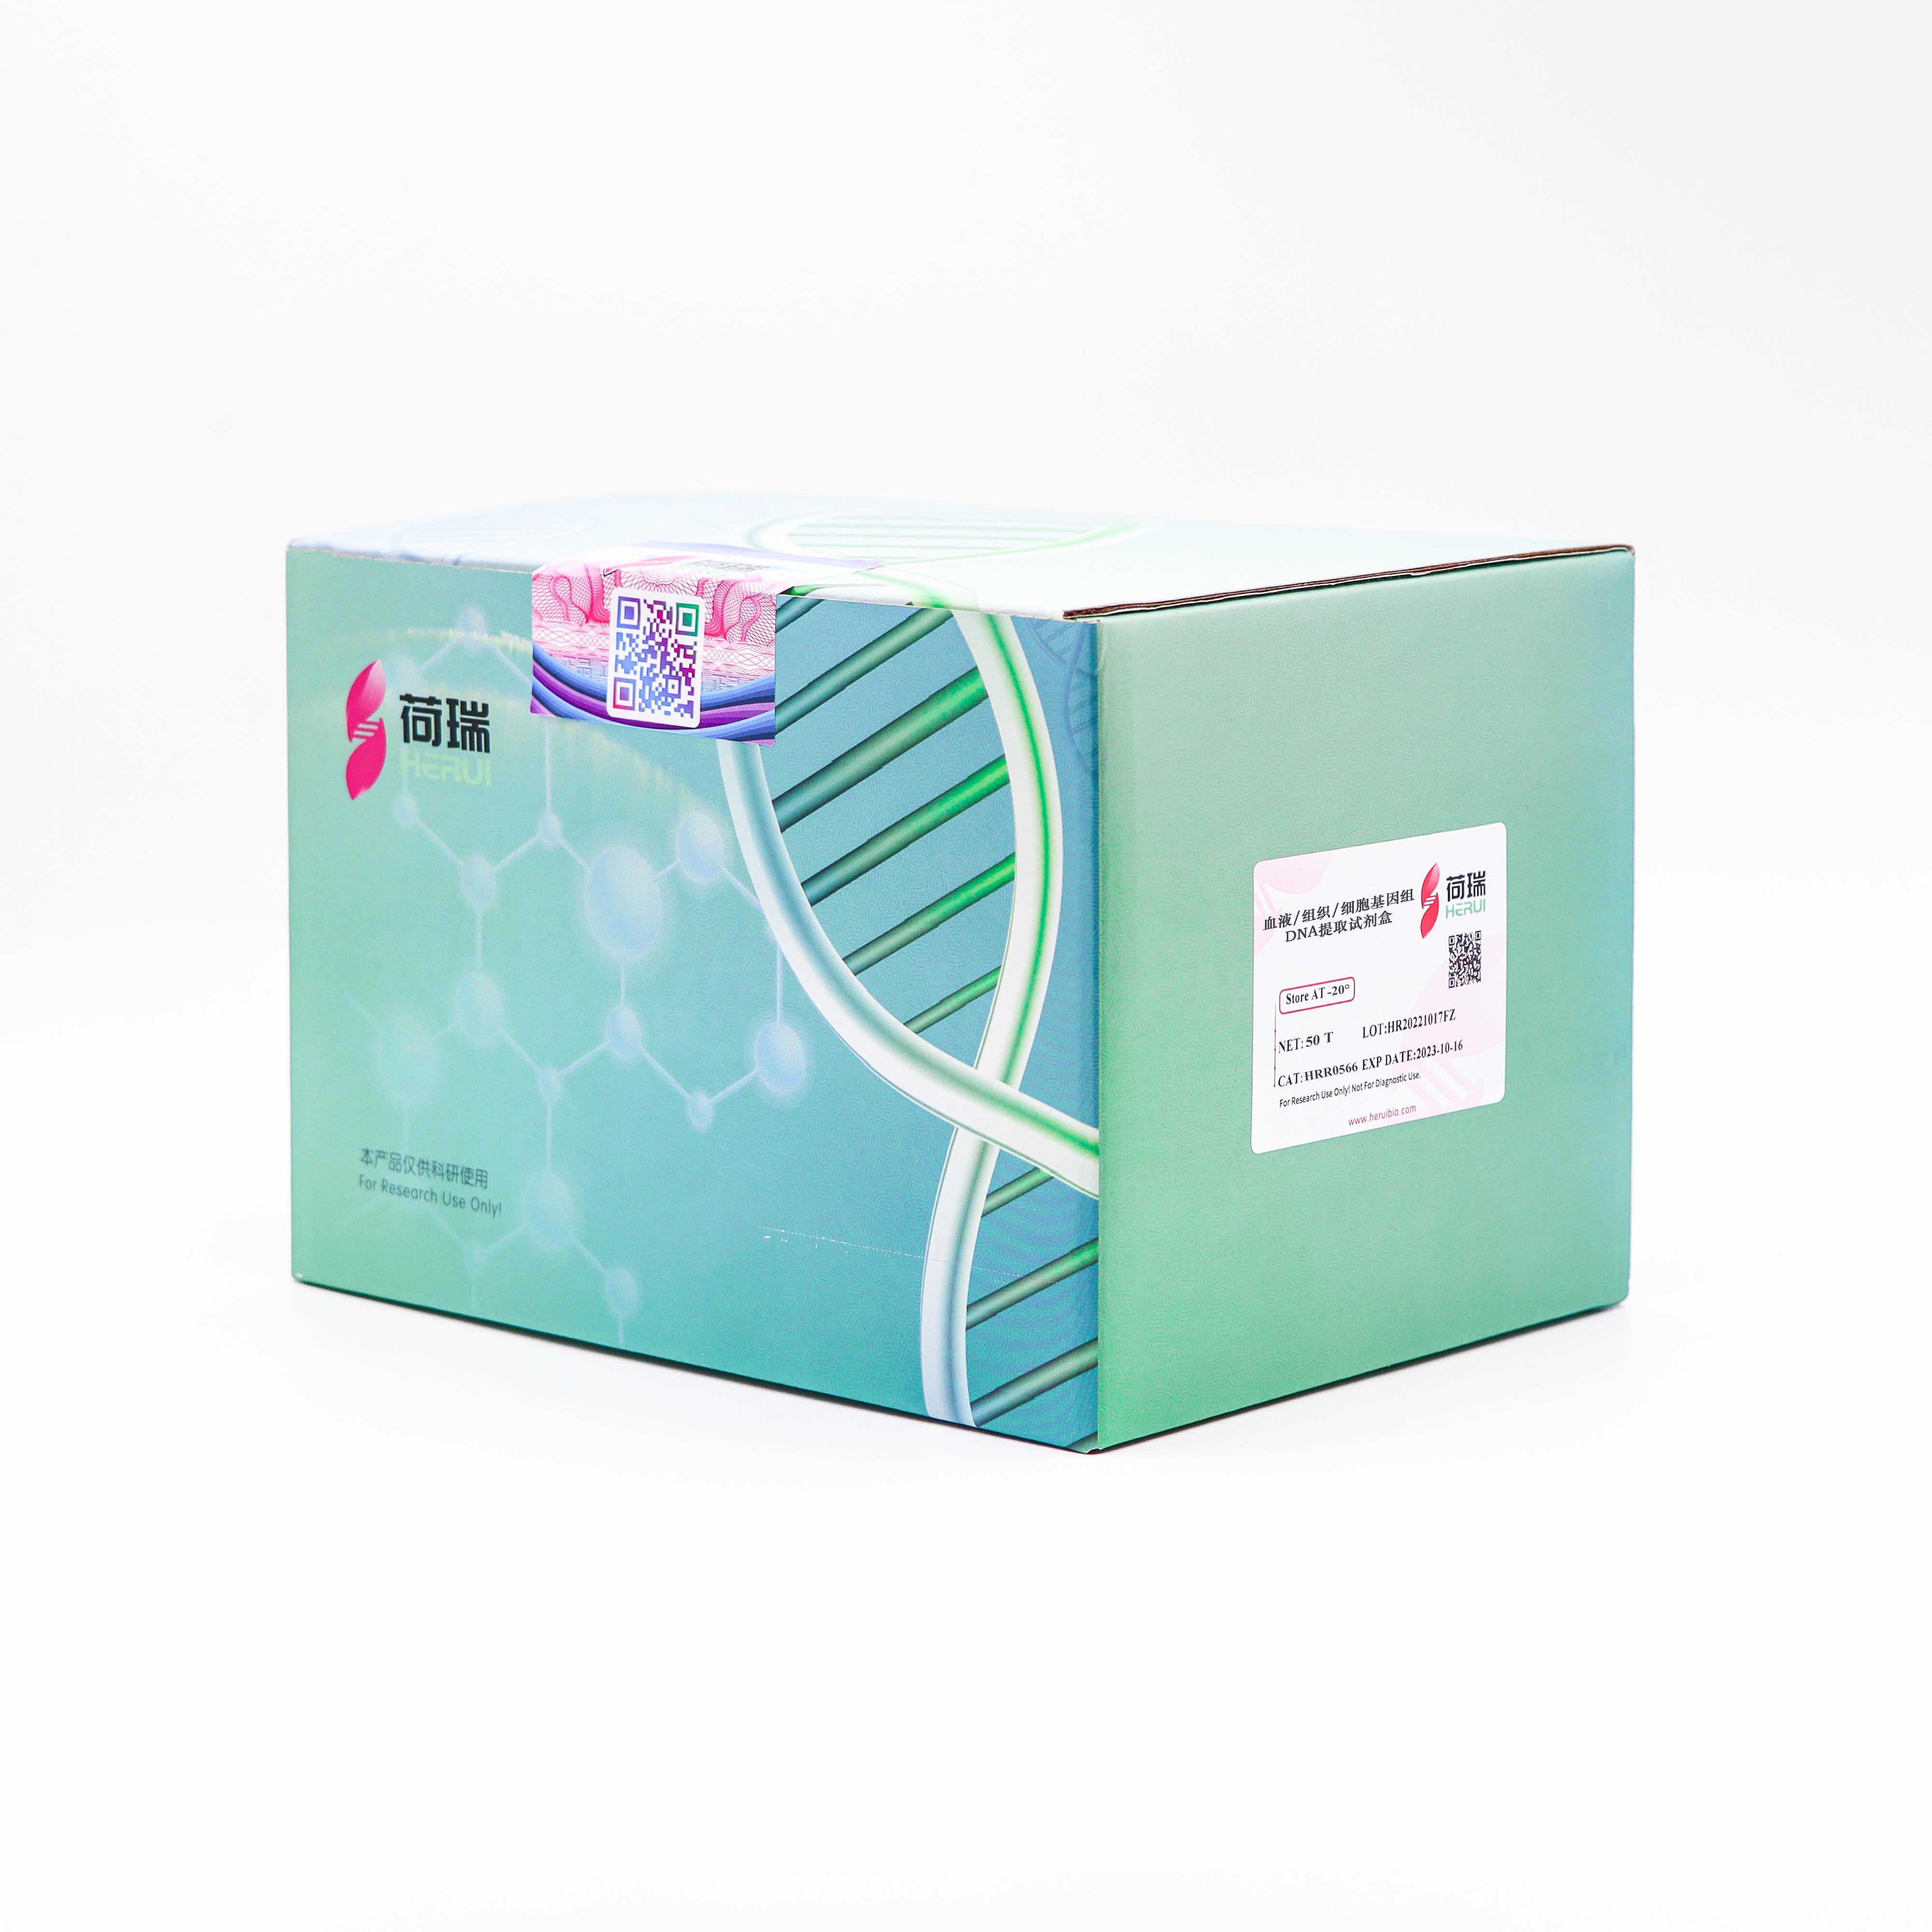 血液/组织/细胞基因组DNA提取试剂盒